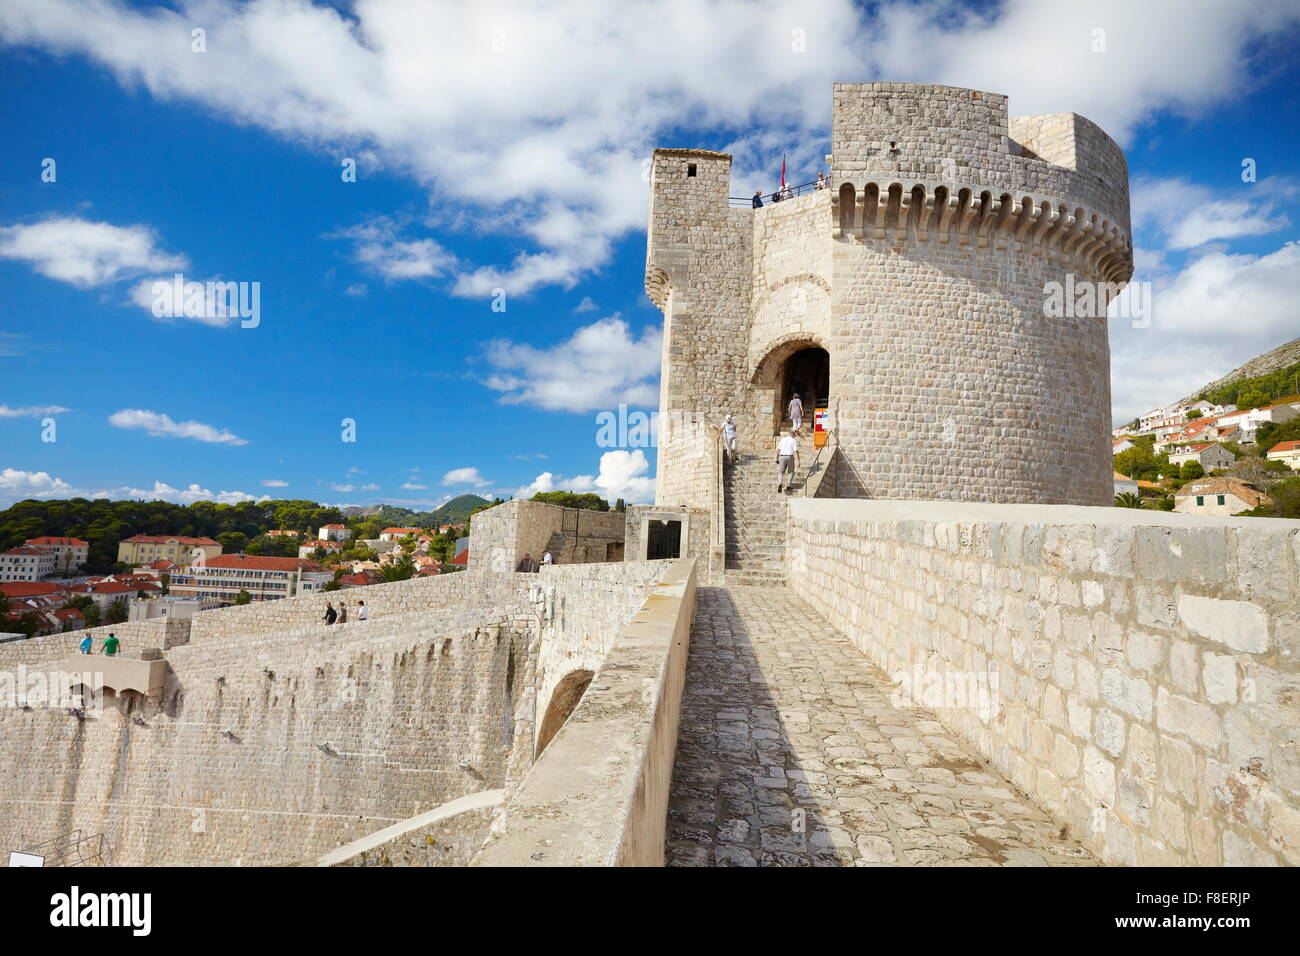 Vieille ville de Dubrovnik, dans la forteresse de Dubrovnik, Croatie Banque D'Images